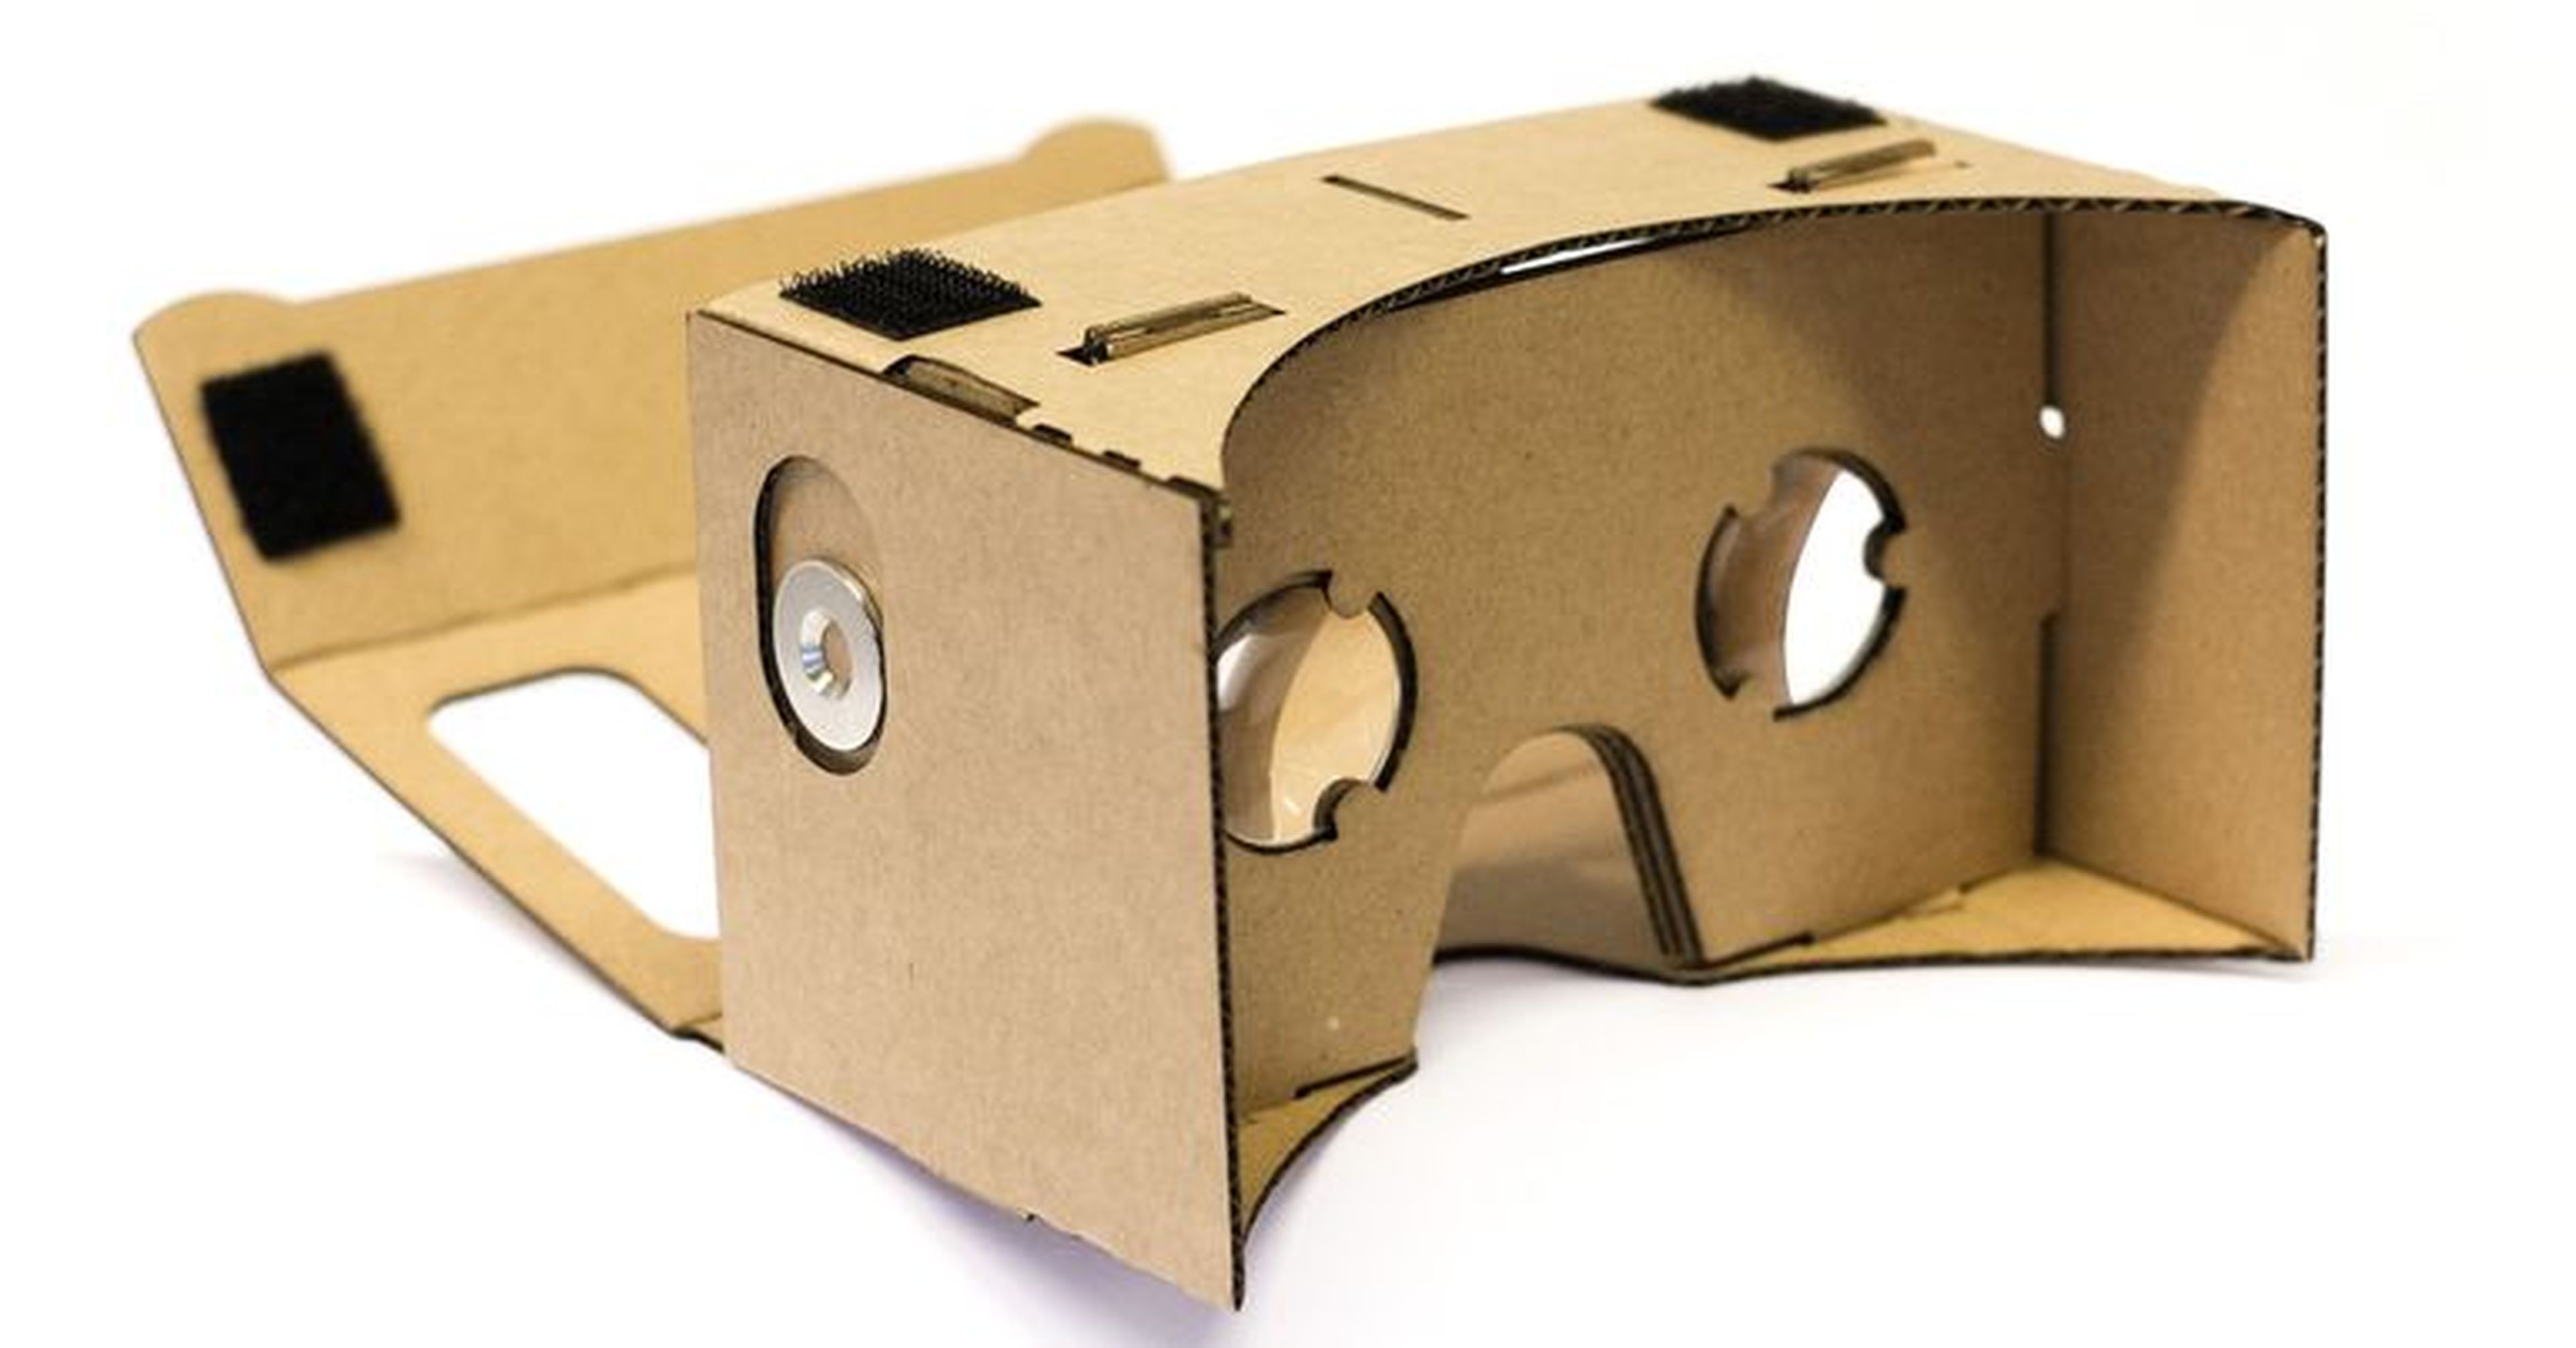 Qué hace falta y cuánto cuesta la Realidad Virtual: Oculus, HTC Vive, PS VR y Samsung Gear VR.